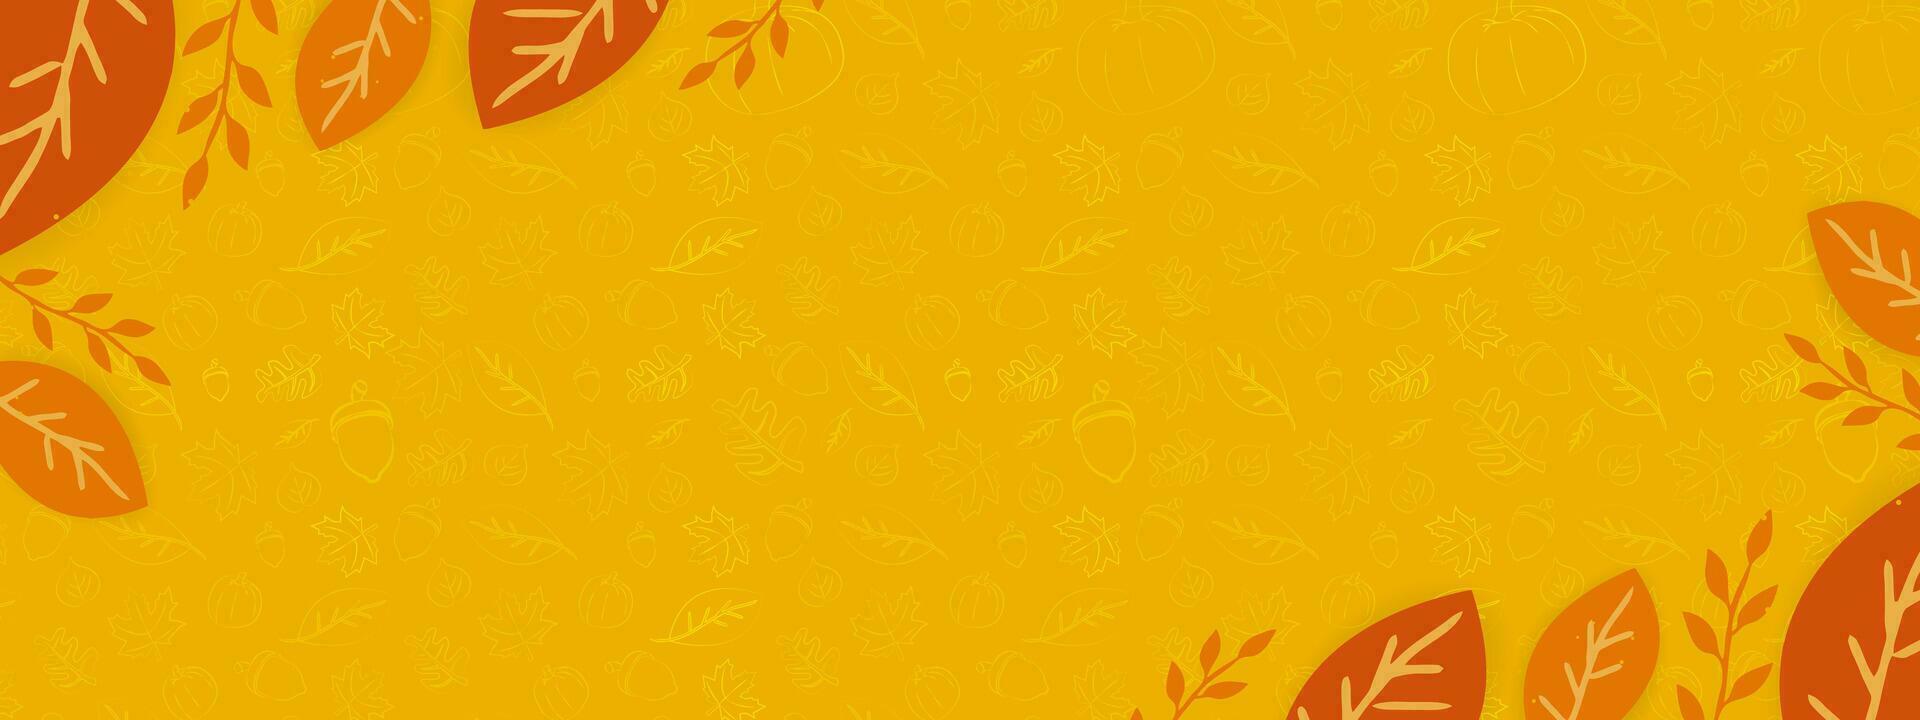 herfst seizoen banier met met kader van bladeren en hand getekend herfst elementen Aan oranje achtergrond. vector illustratie. eps 10.